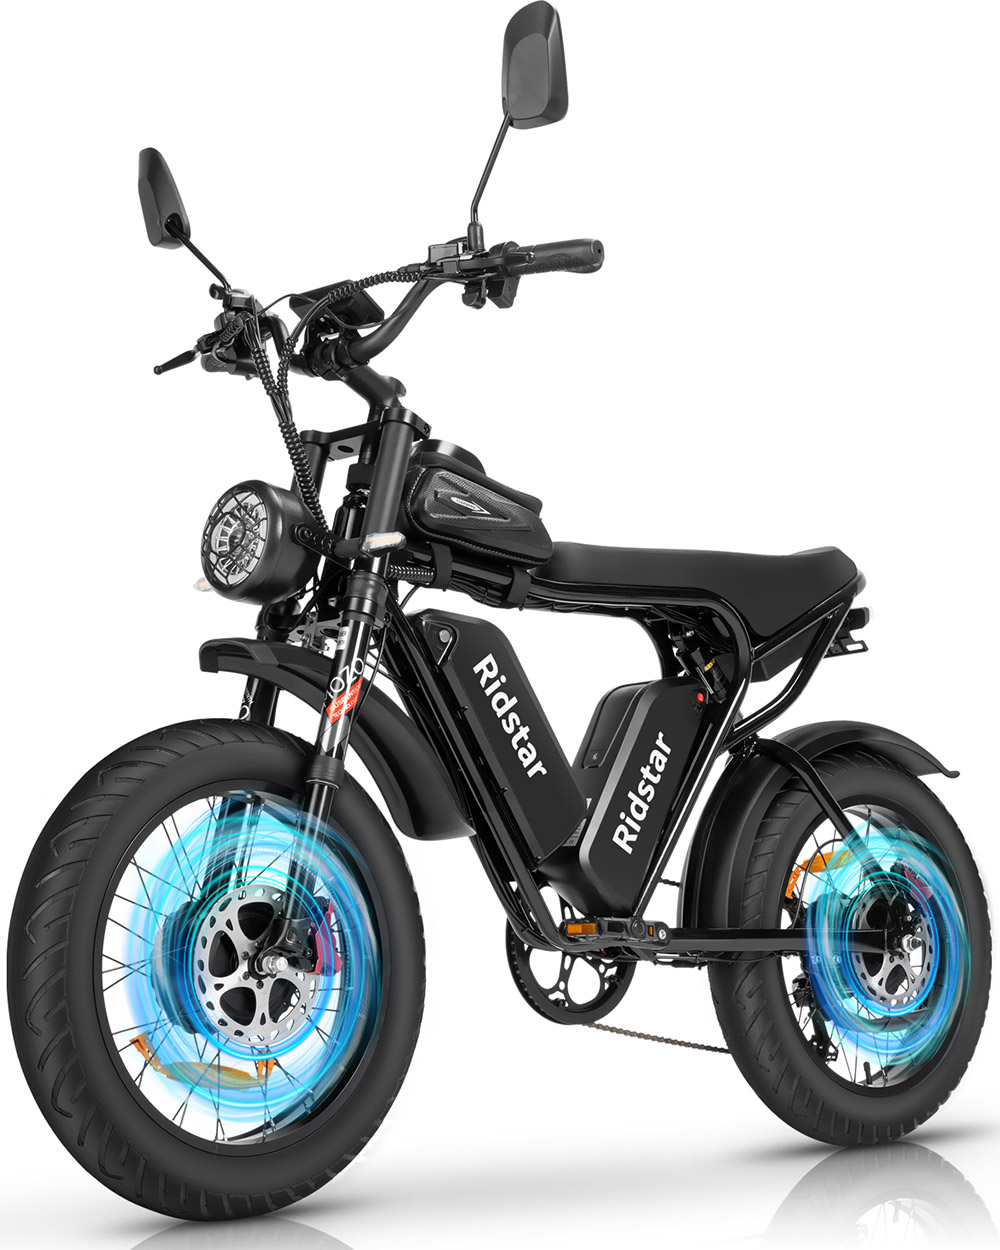 Ηλεκτρικό ποδήλατο εκτός δρόμου Ridstar Q20 Pro, 20*4 ιντσών λιπαρά ελαστικά 2*1000W κινητήρας 52V 20AH Διπλή μπαταρία 34 mph Μέγιστη Ταχύτητα 180 μίλια Μέγιστη εμβέλεια